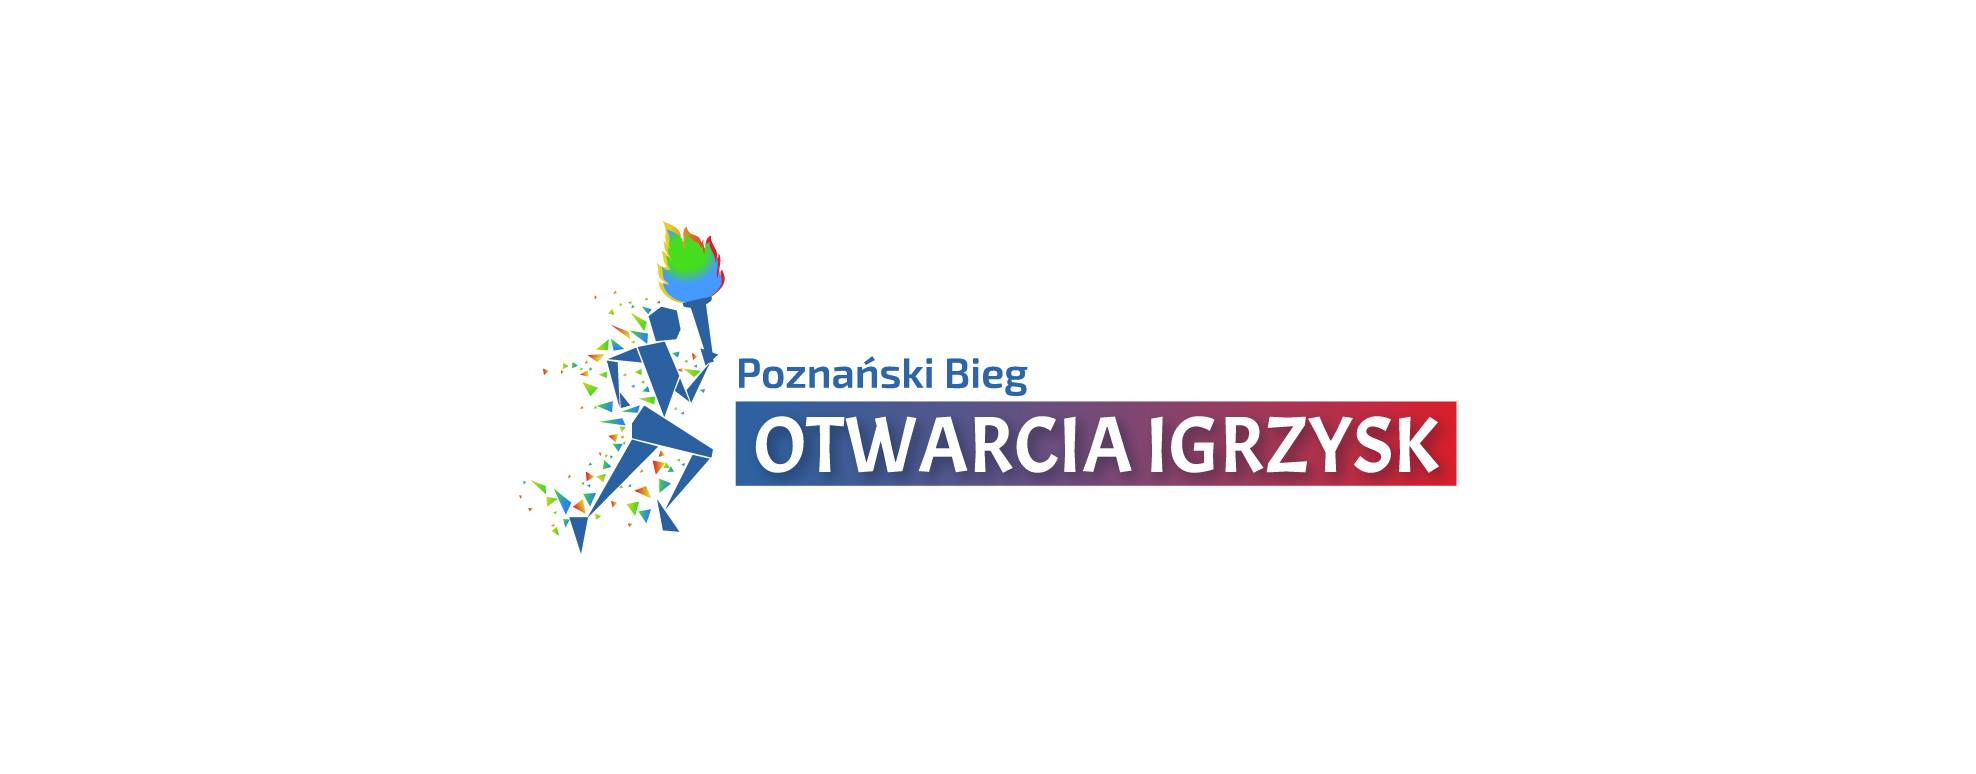 Już za miesiąc Poznański Bieg Otwarcia Igrzysk. Trwają zapisy!